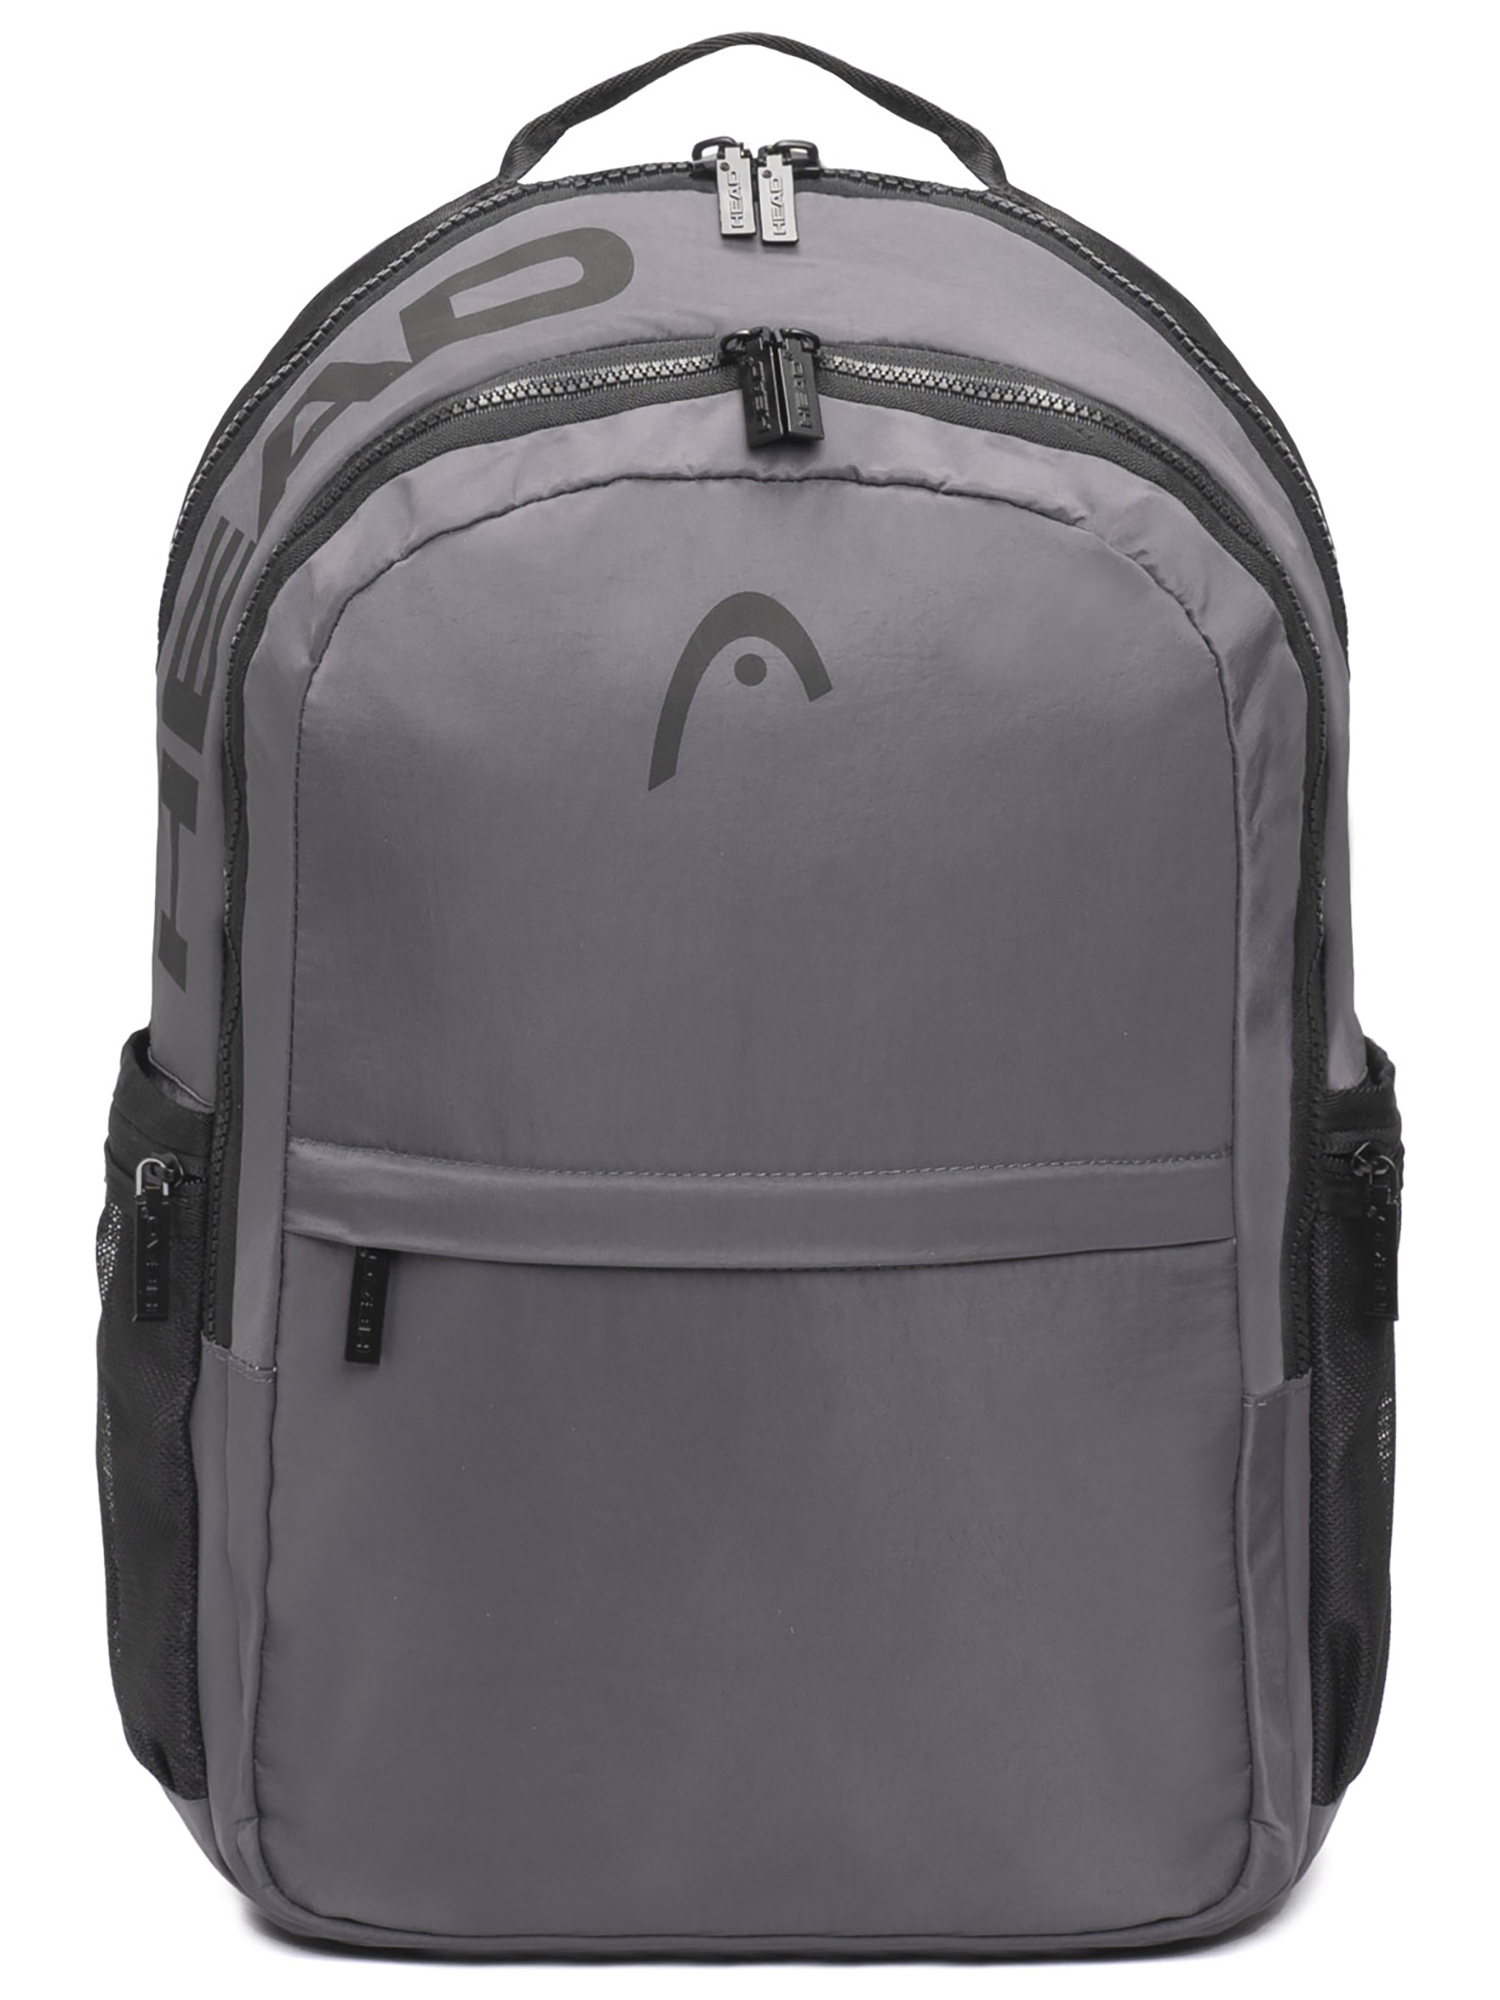 Рюкзак HEAD Smash 2 Compartments Backpack, темно серый